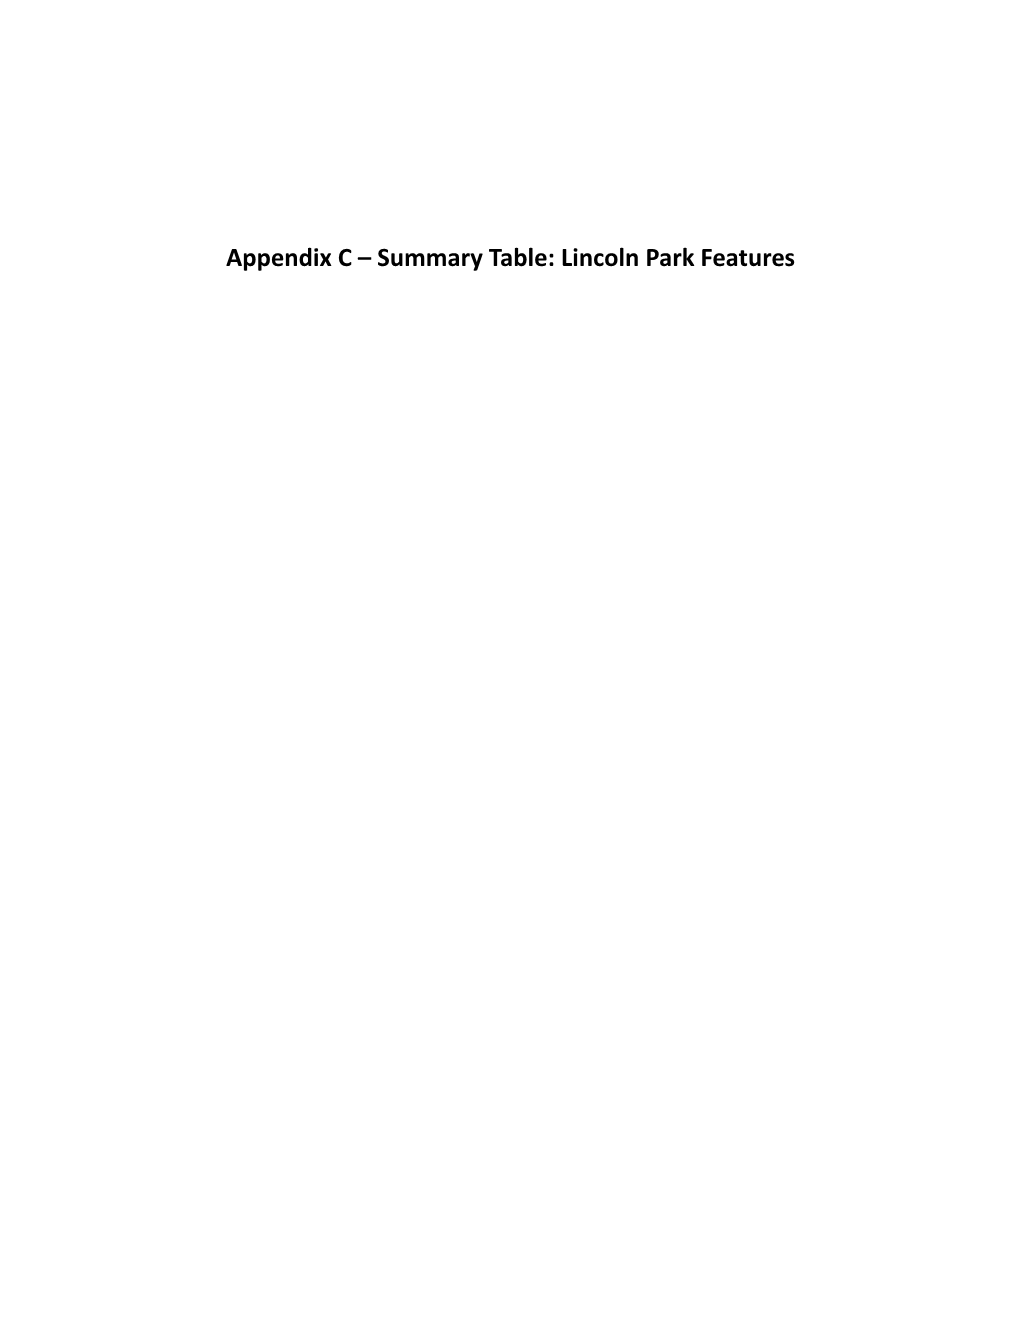 Appendix C – Lincoln Park Resources